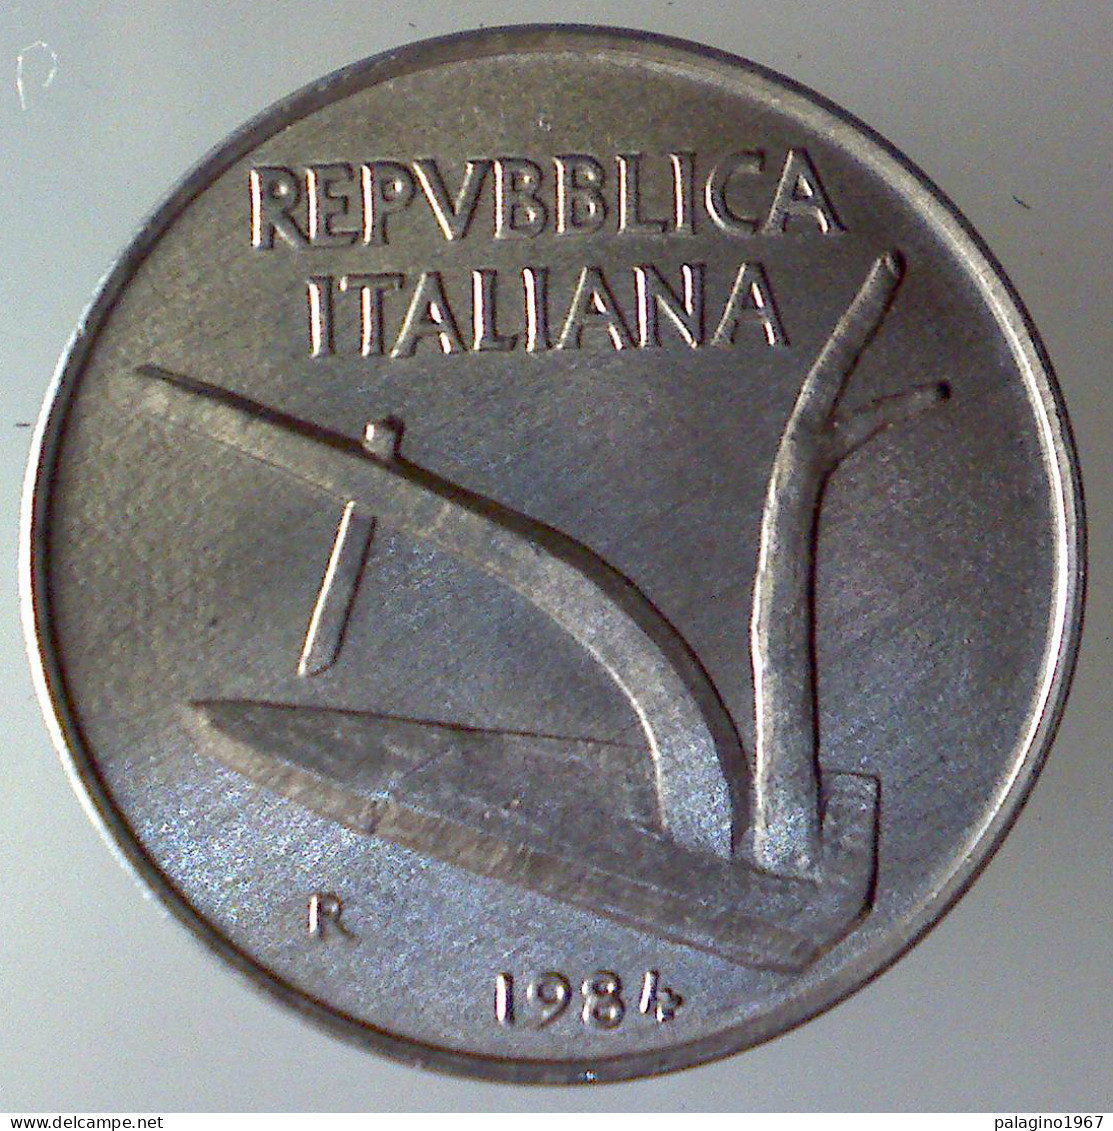 REPUBBLICA ITALIANA 10 Lire Spighe 1984 FDC  - 10 Lire